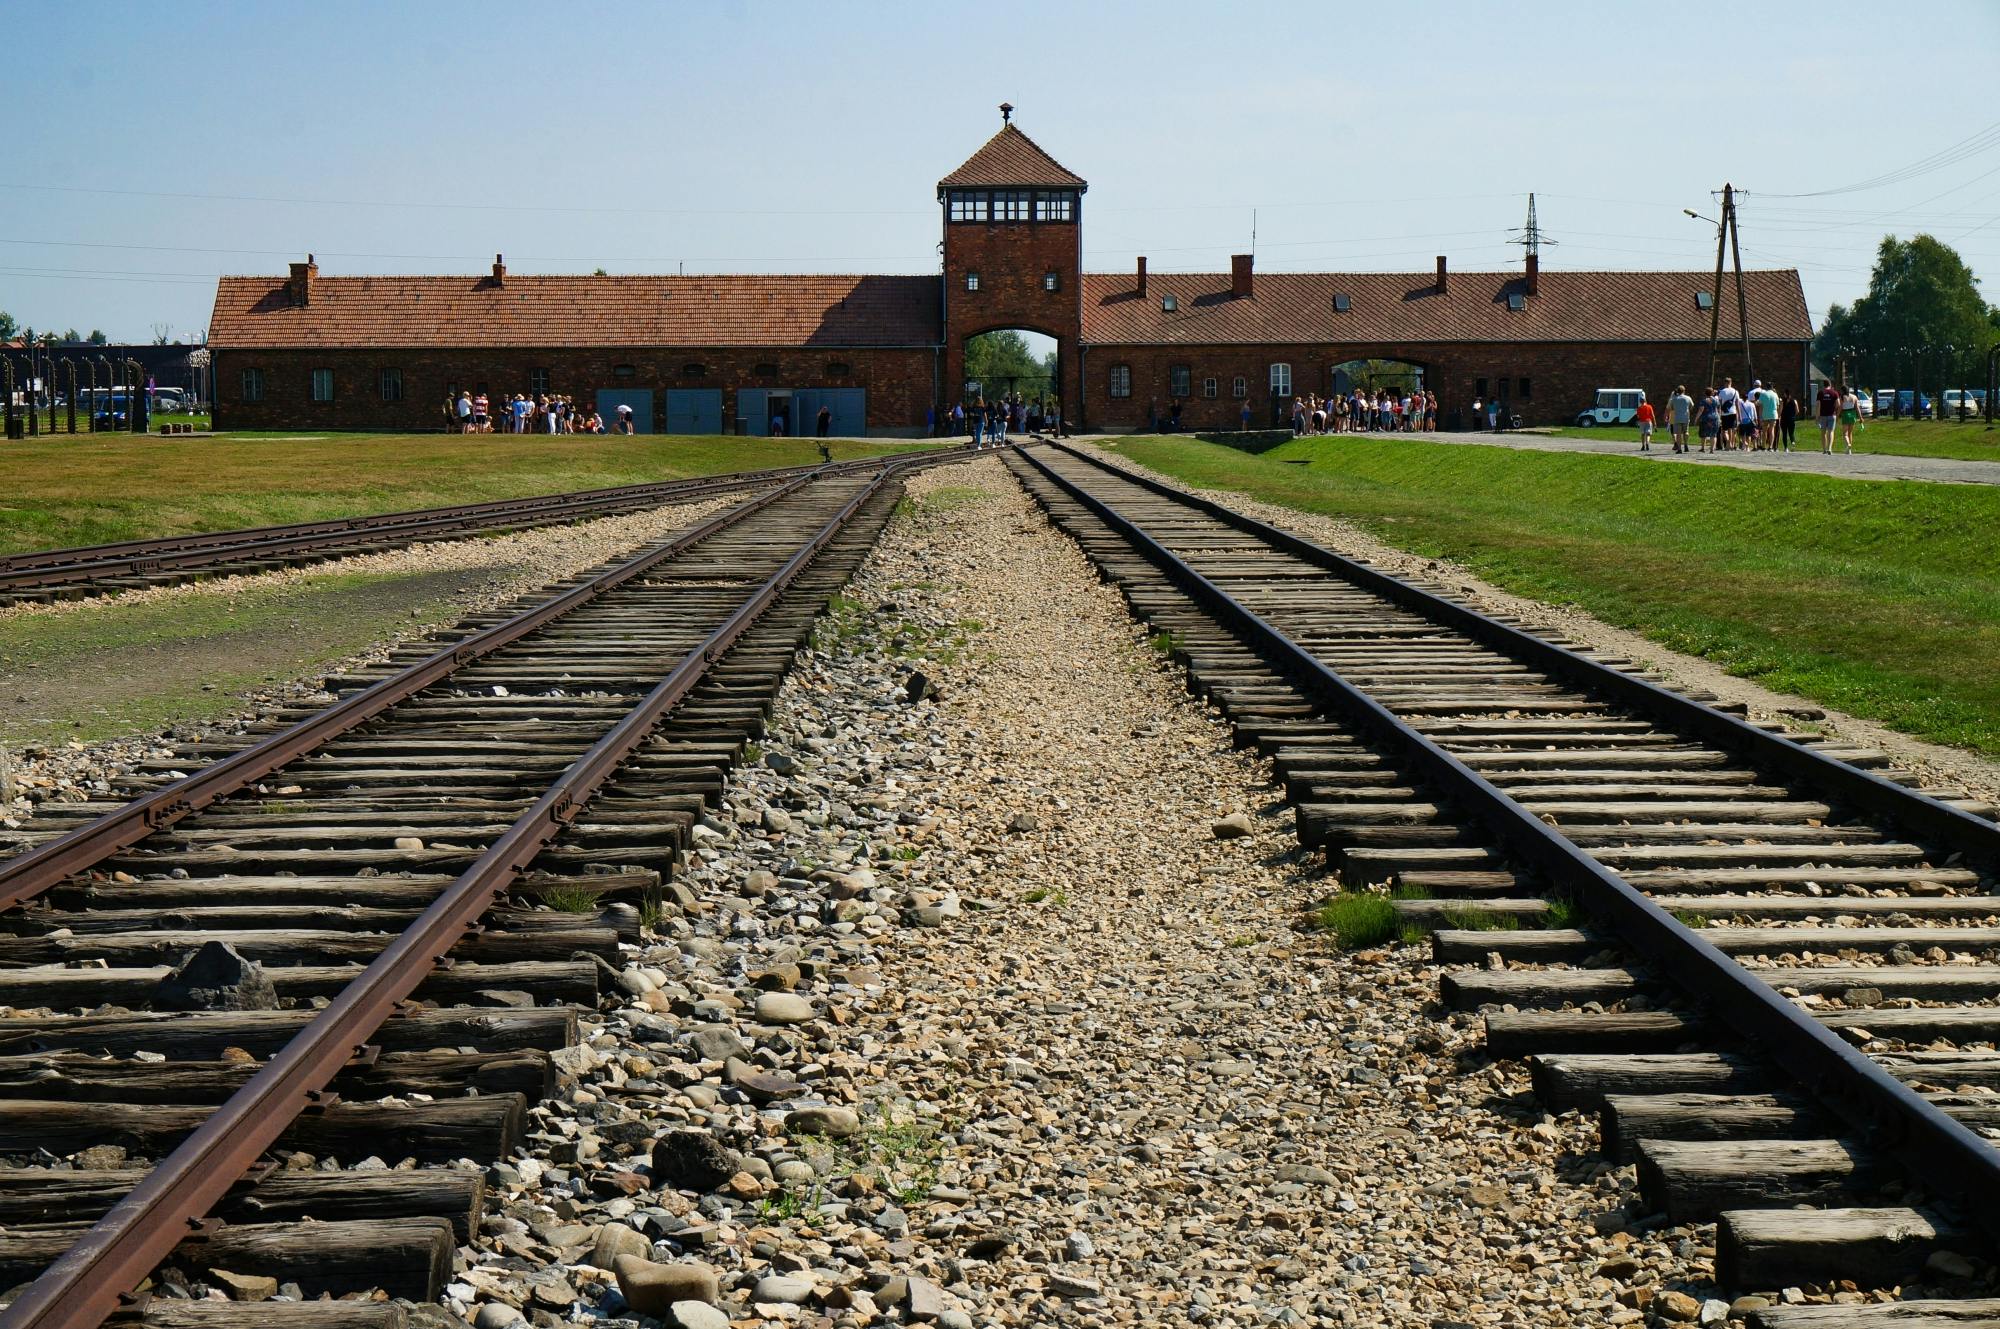 Krakau Auschwitz-Birkenau Selbstgeführte Tour mit Abholung